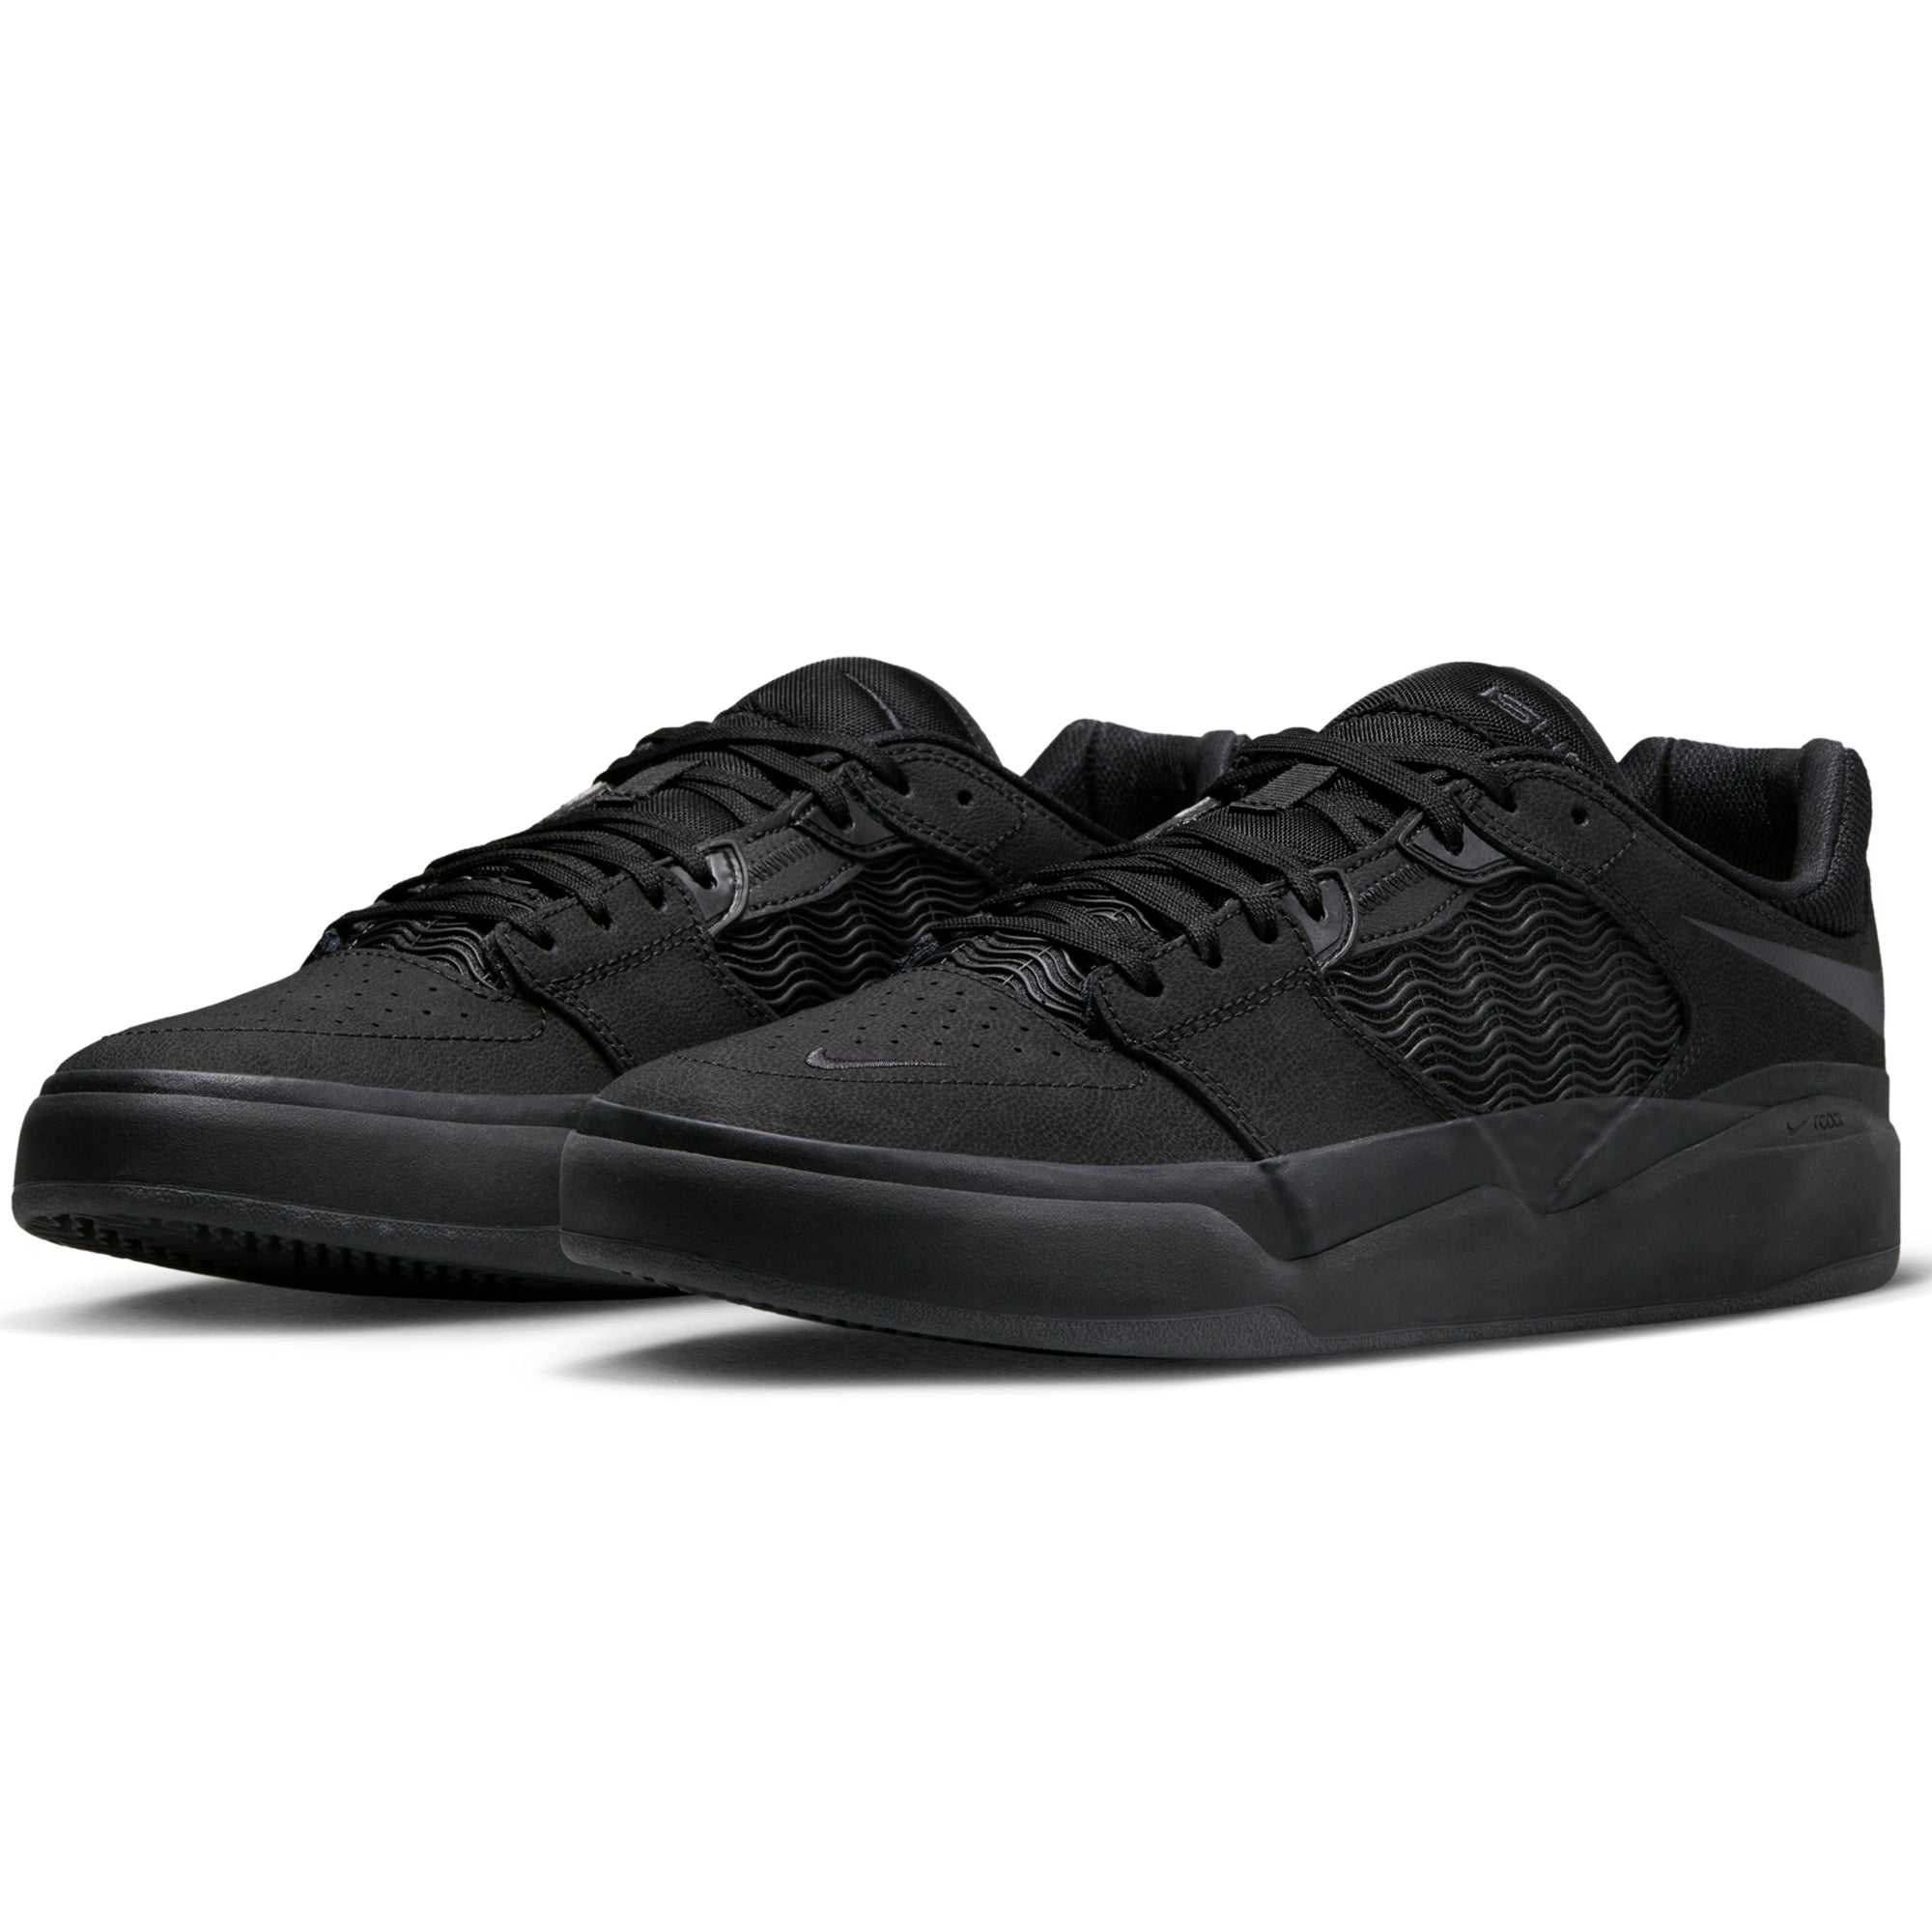 Nike SB Ishod Premium Pro Shoe - Black/Black-Black